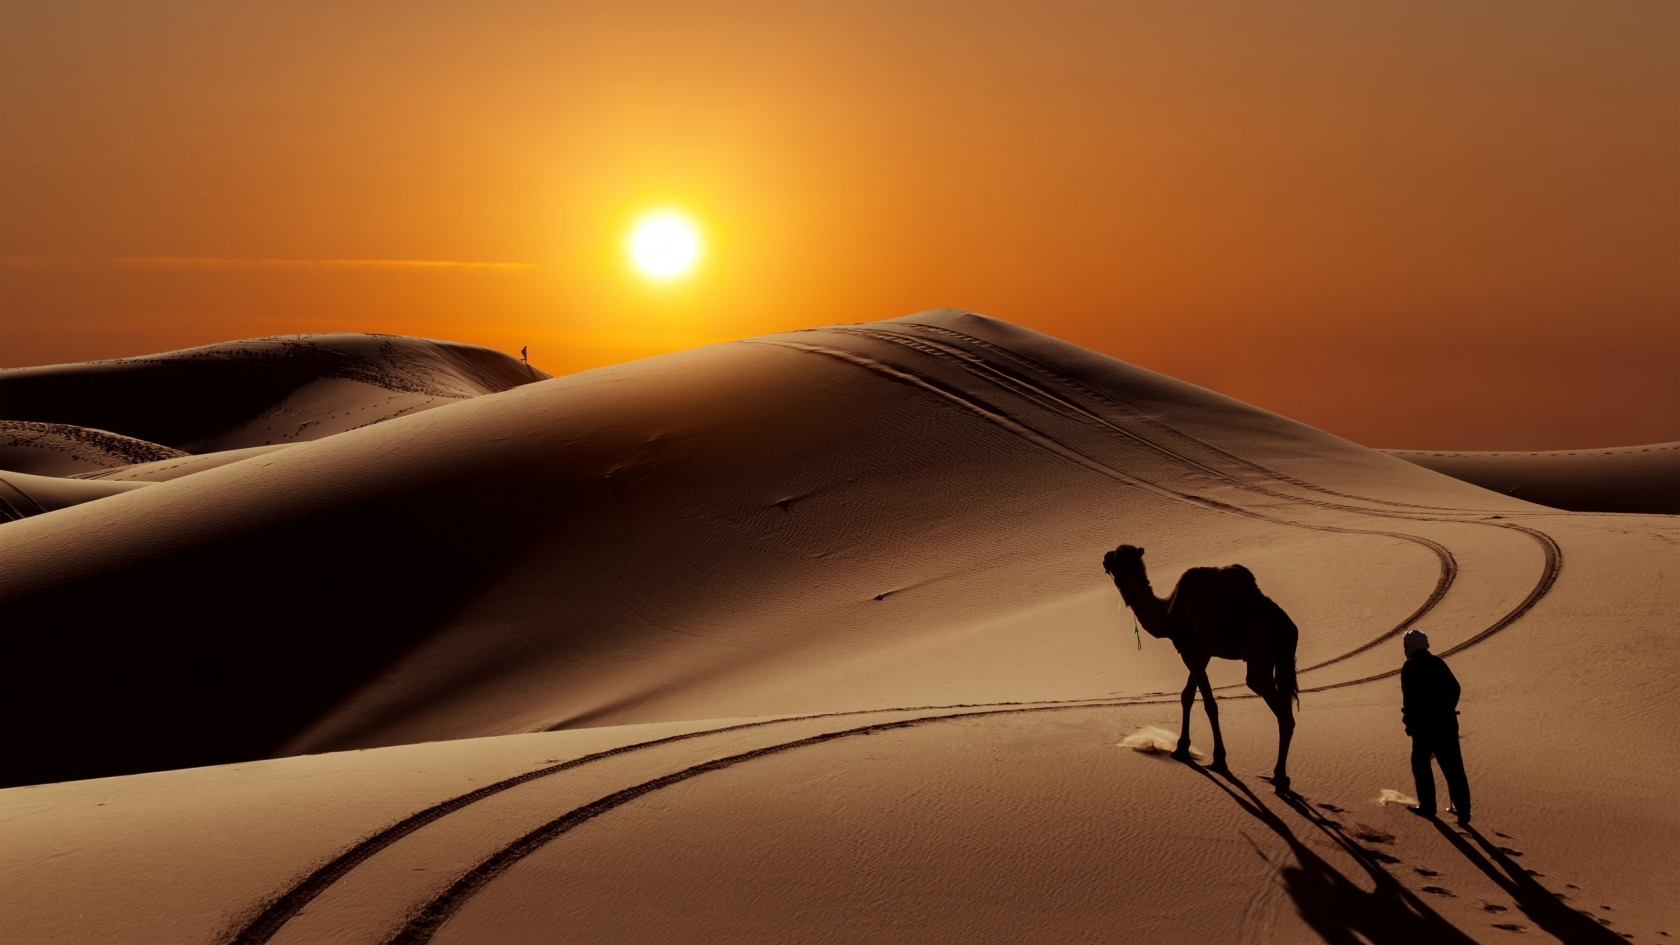 Sunset in Desert for 1680 x 945 HDTV resolution